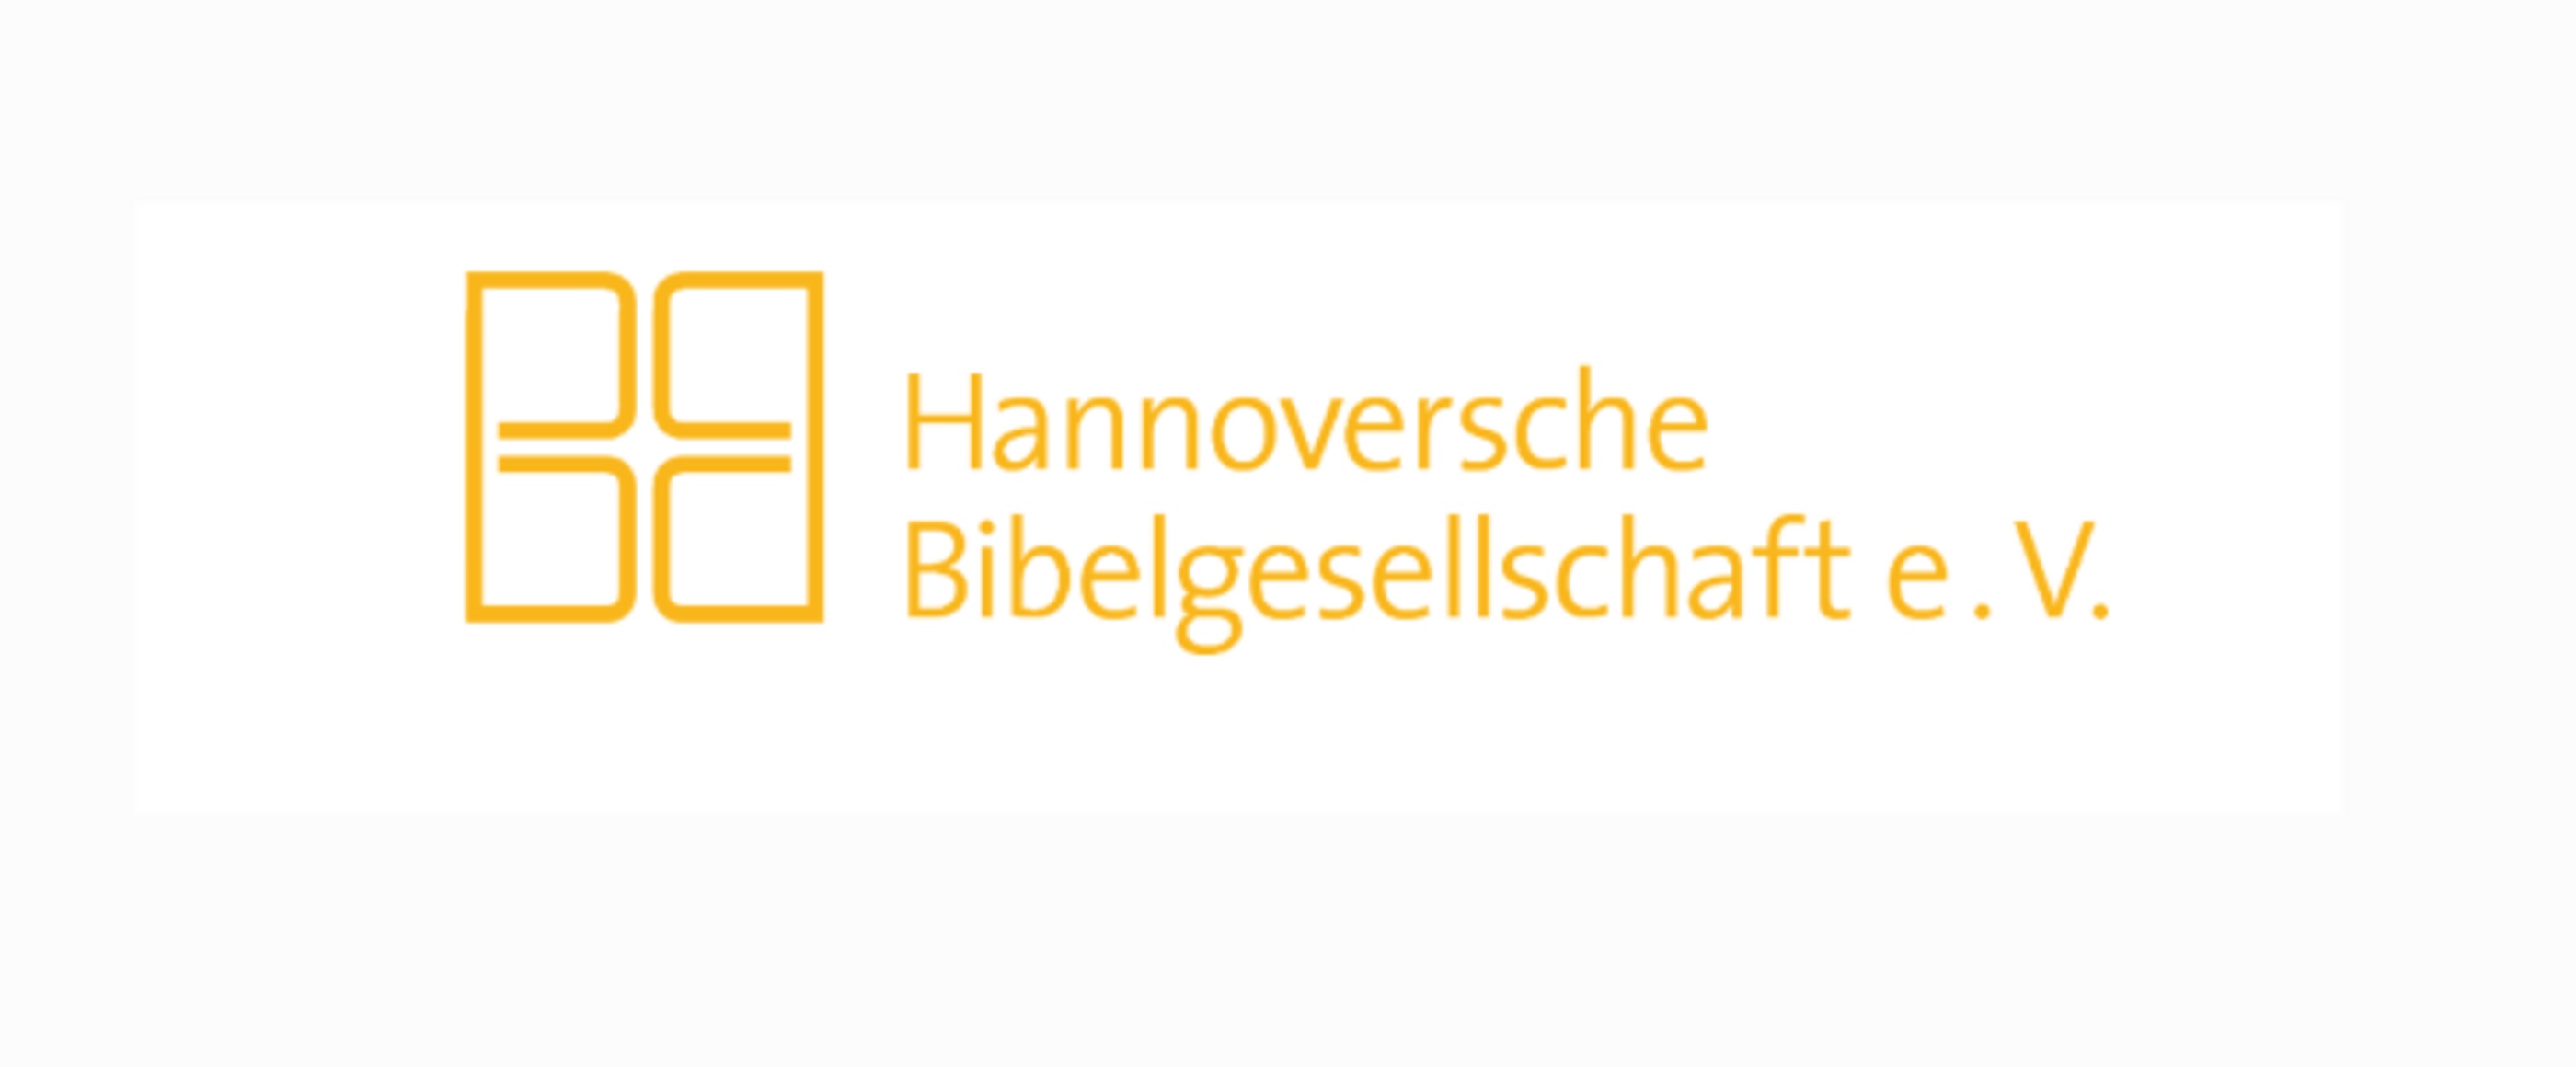 Das Logo der Bibelgesellschaft ist gelb auf weiß.